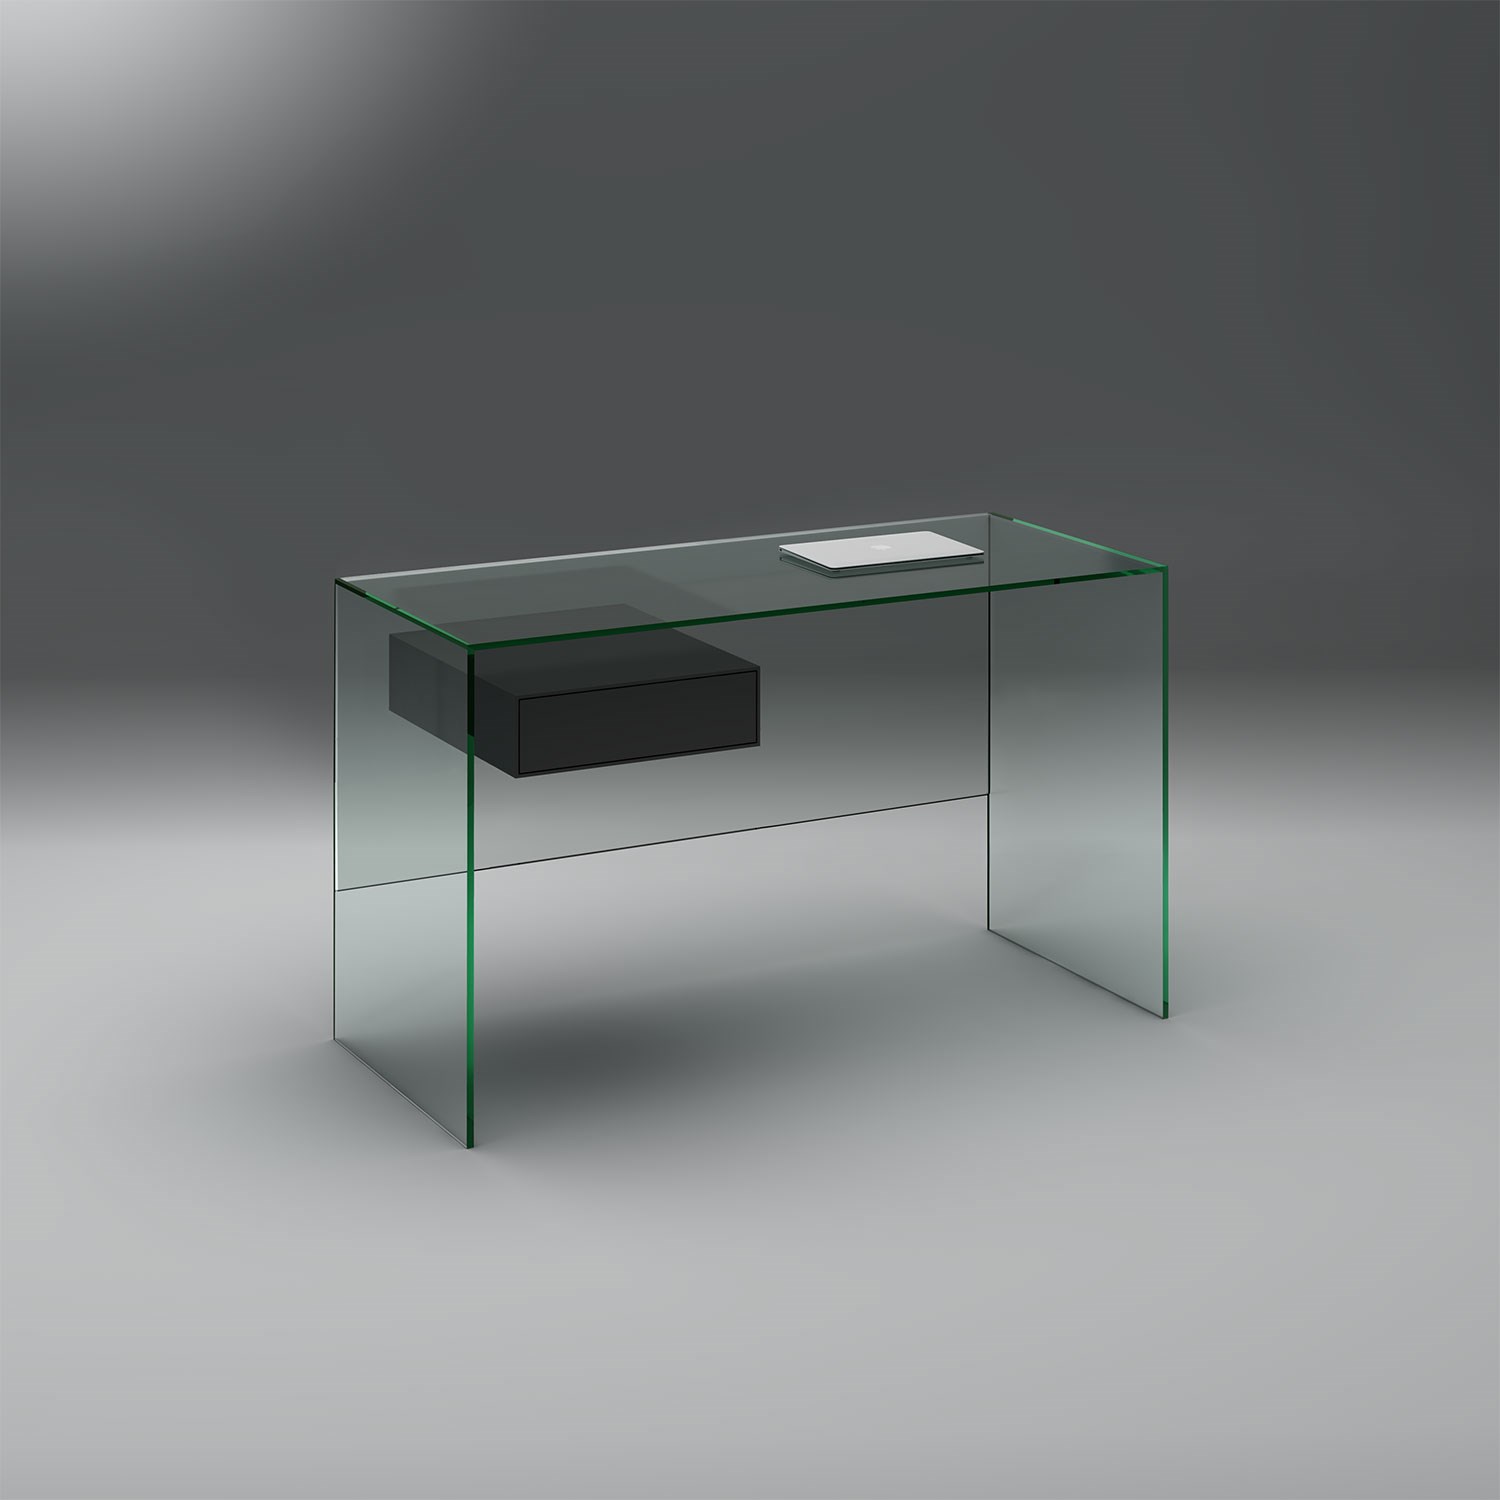 Glasschreibtisch mit Schublade FLY von DREIECK DESIGN: Glas Floatglas - Schublade seidenmatt lackiert anthrazitgrau